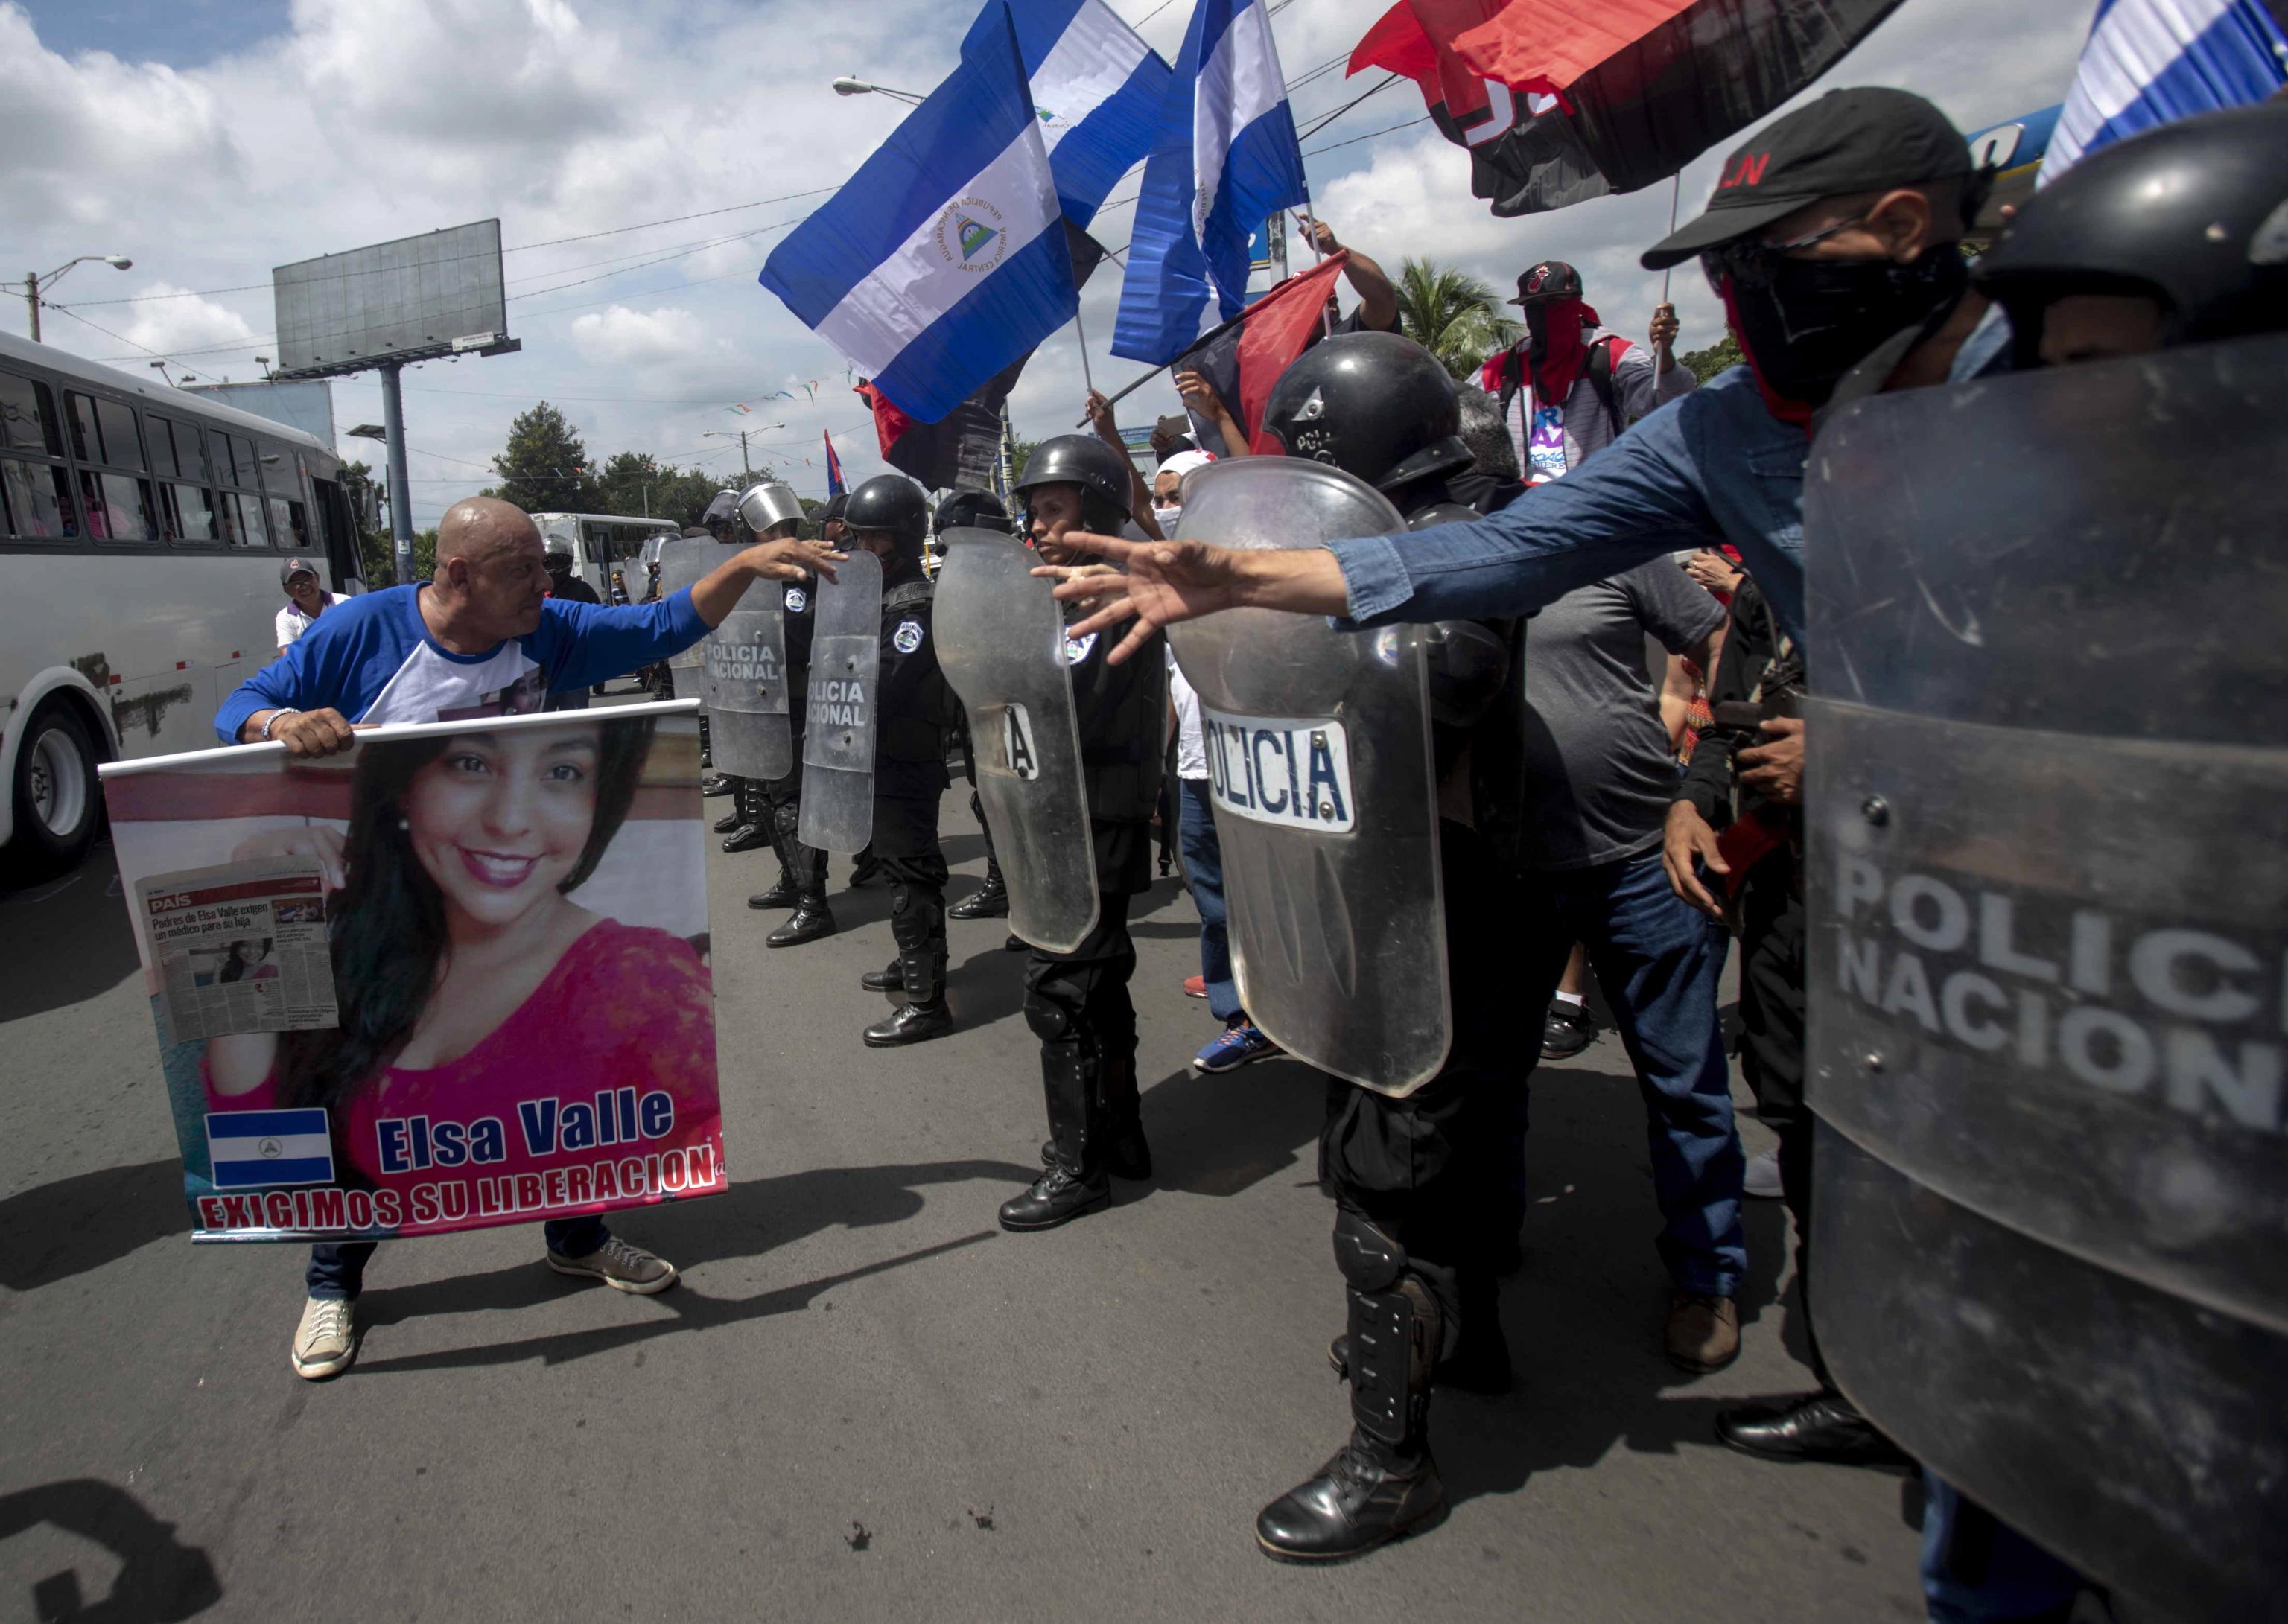 Un manifestante anti Ortega si scaglia contro i sostenitori del governo